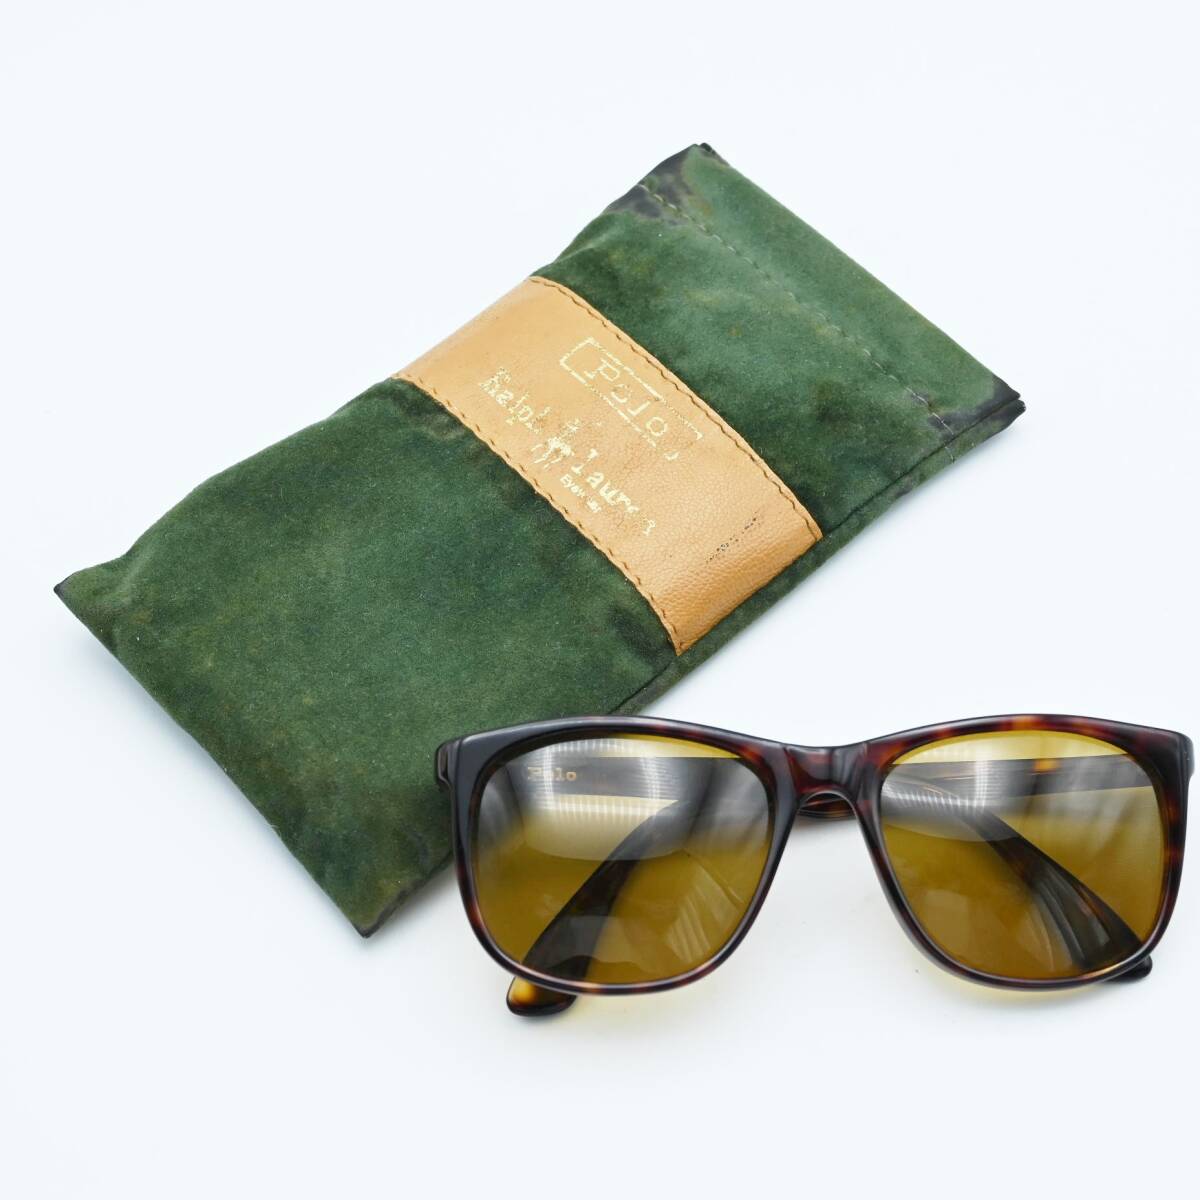 M05 Polo Ralph Lauren Polo Ralph Lauren plastic frame tortoise shell pattern sunglasses Brown 